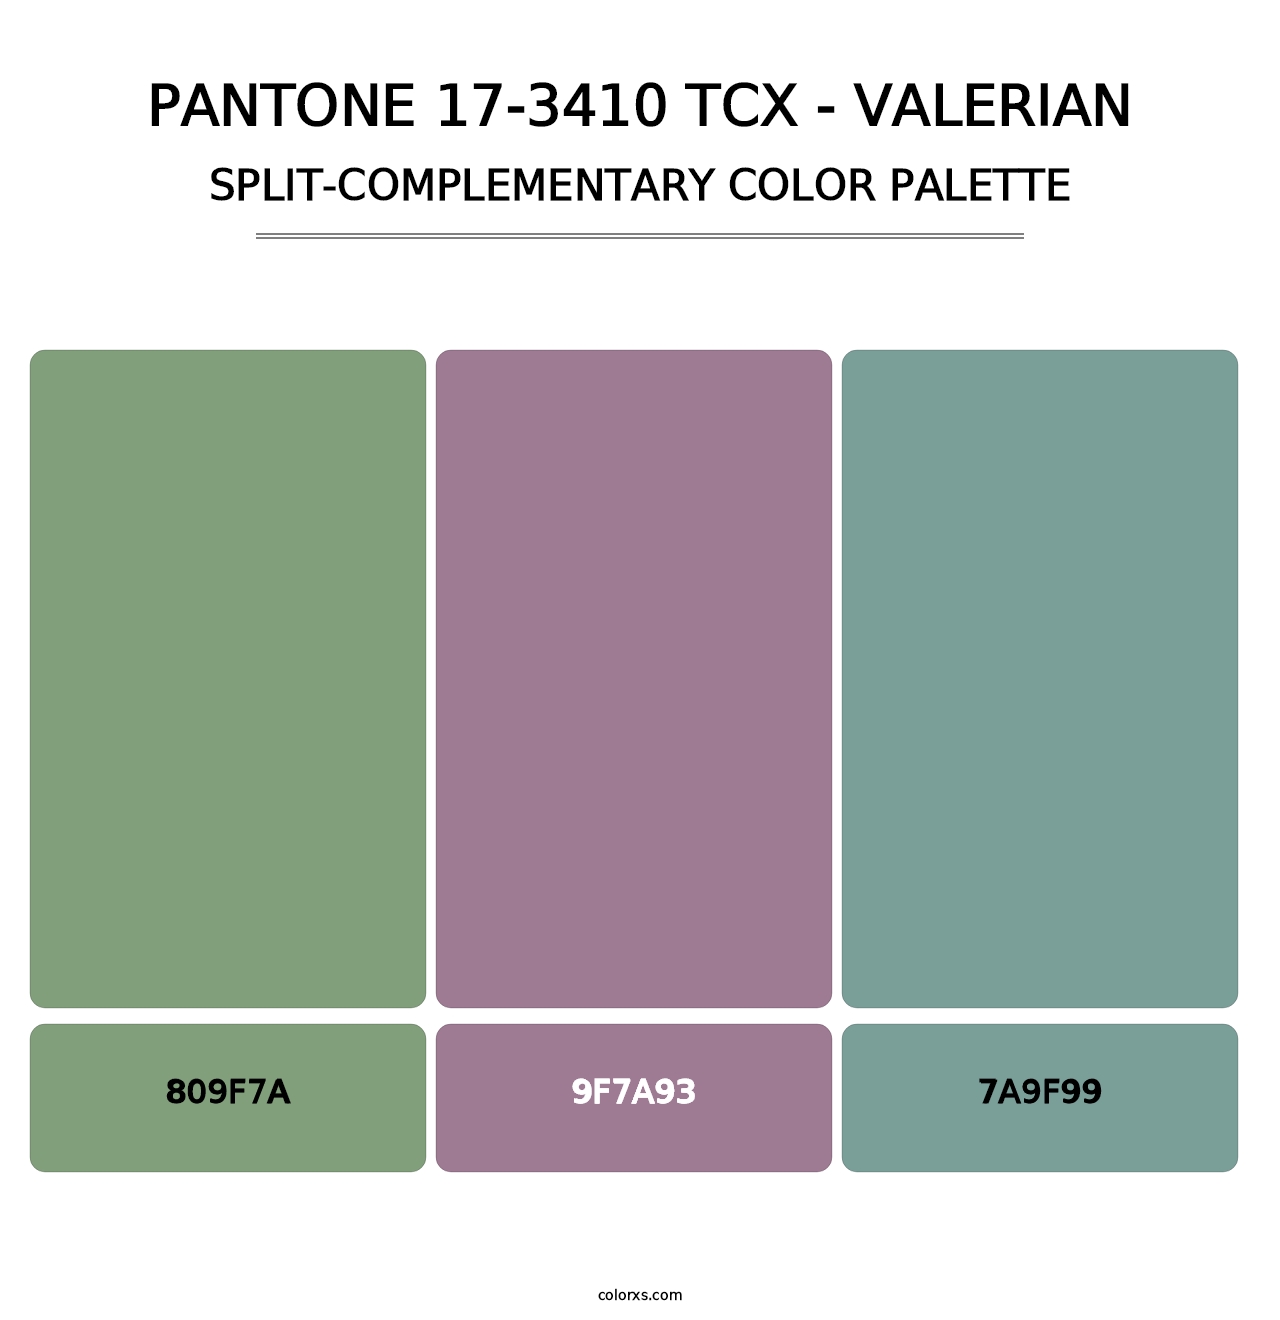 PANTONE 17-3410 TCX - Valerian - Split-Complementary Color Palette